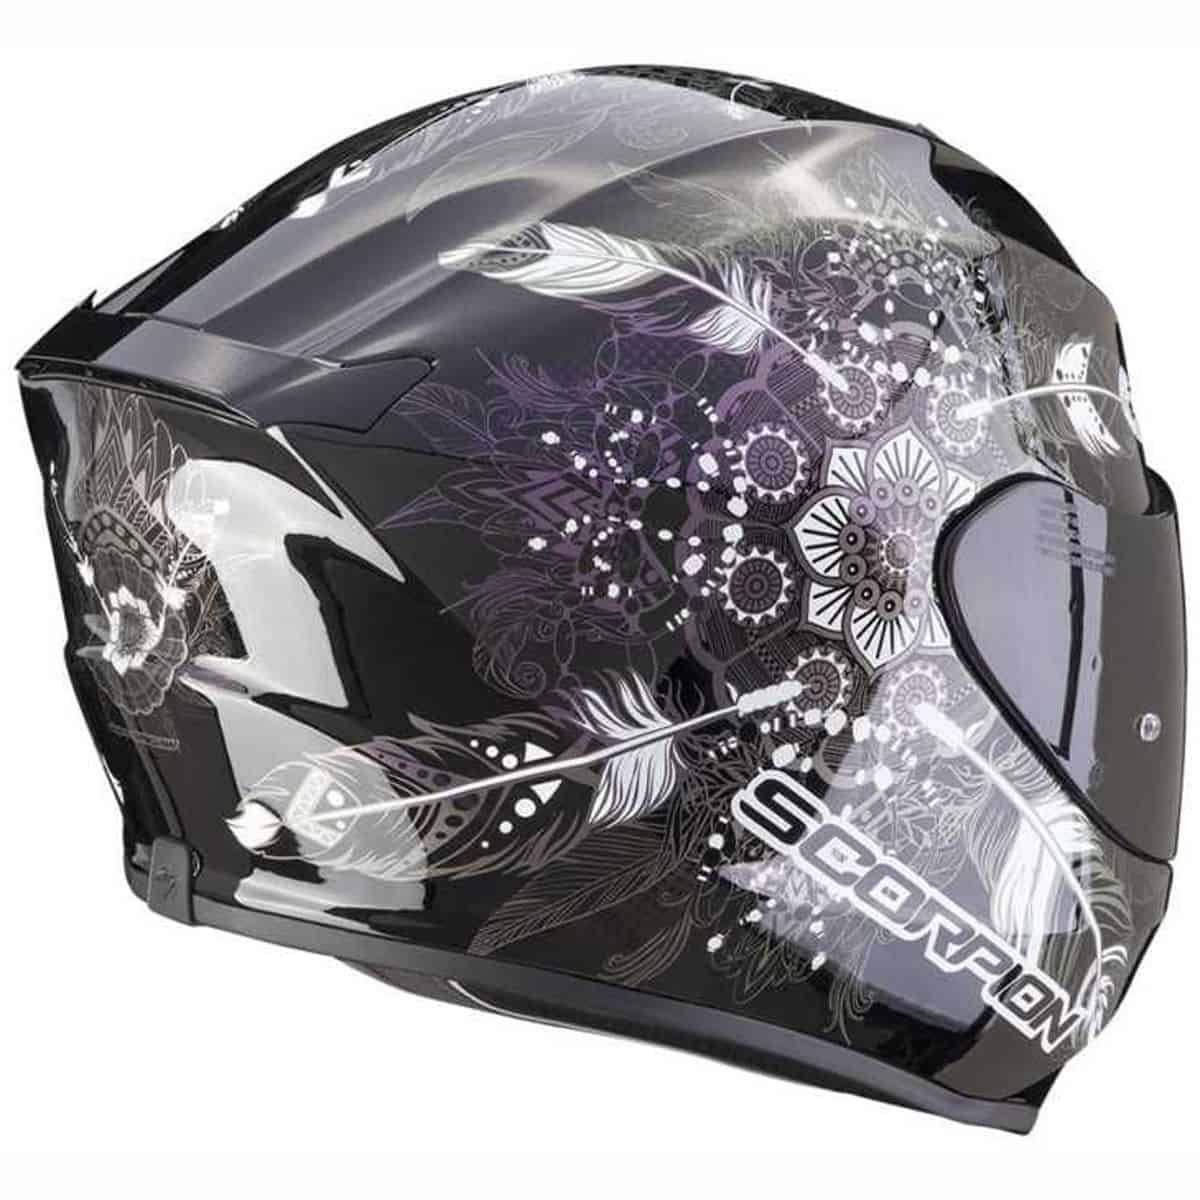 Scorpion Exo 391: Entry level full face motorbike helmet chameleon side